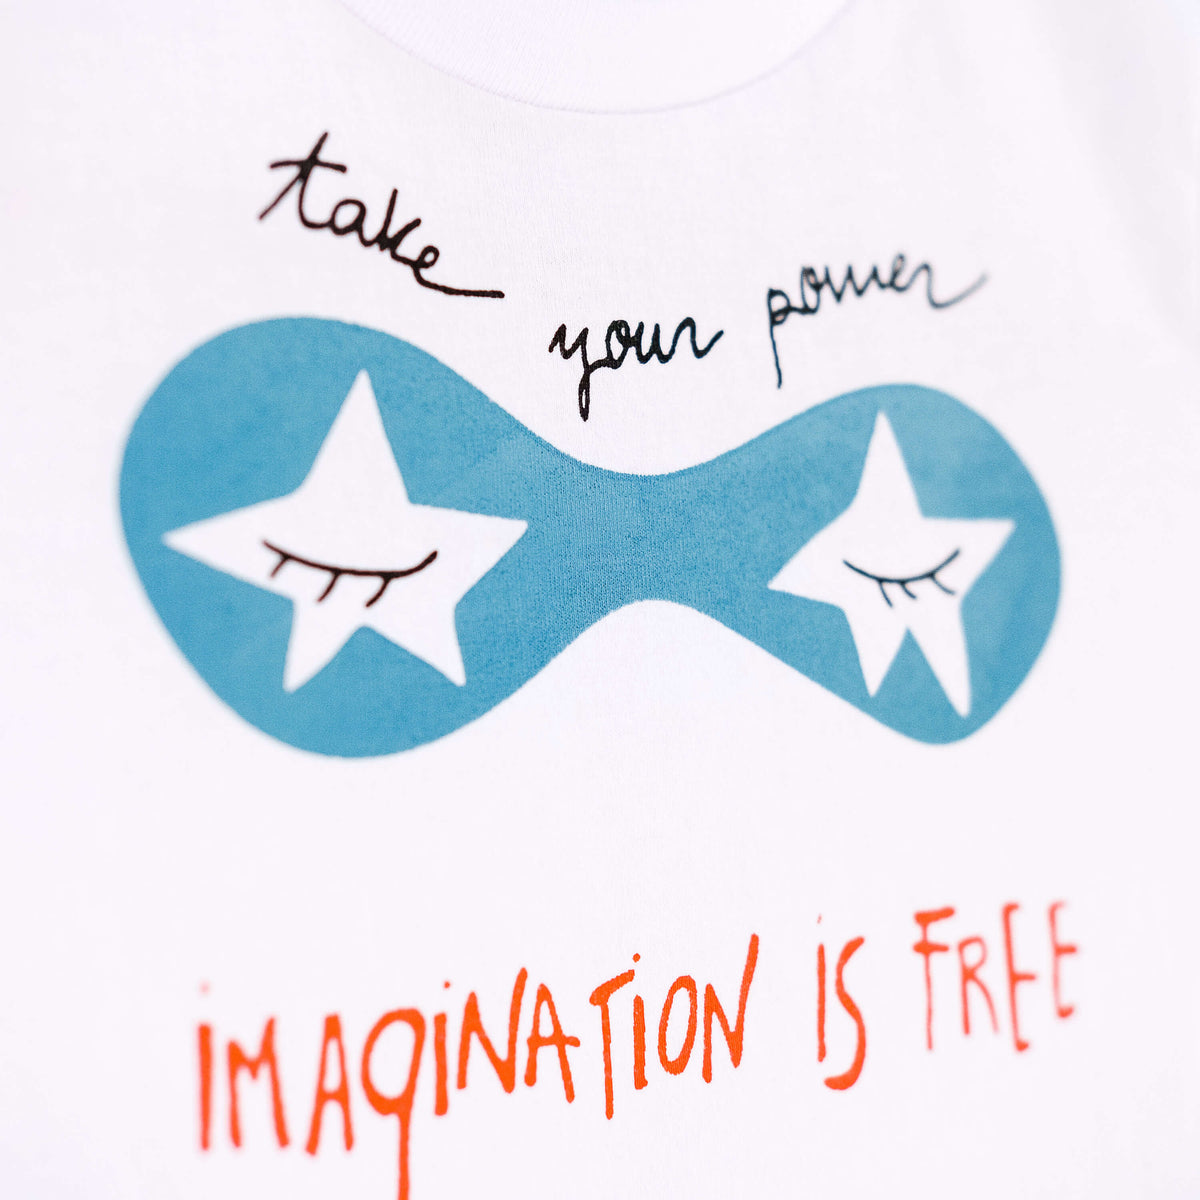 Detalle de texto serigrafía en color negro, azul y naranja. Camiseta blanca de algodón orgánico para niños, estampado a mano con tintas ecológicas. Modelo unisex.